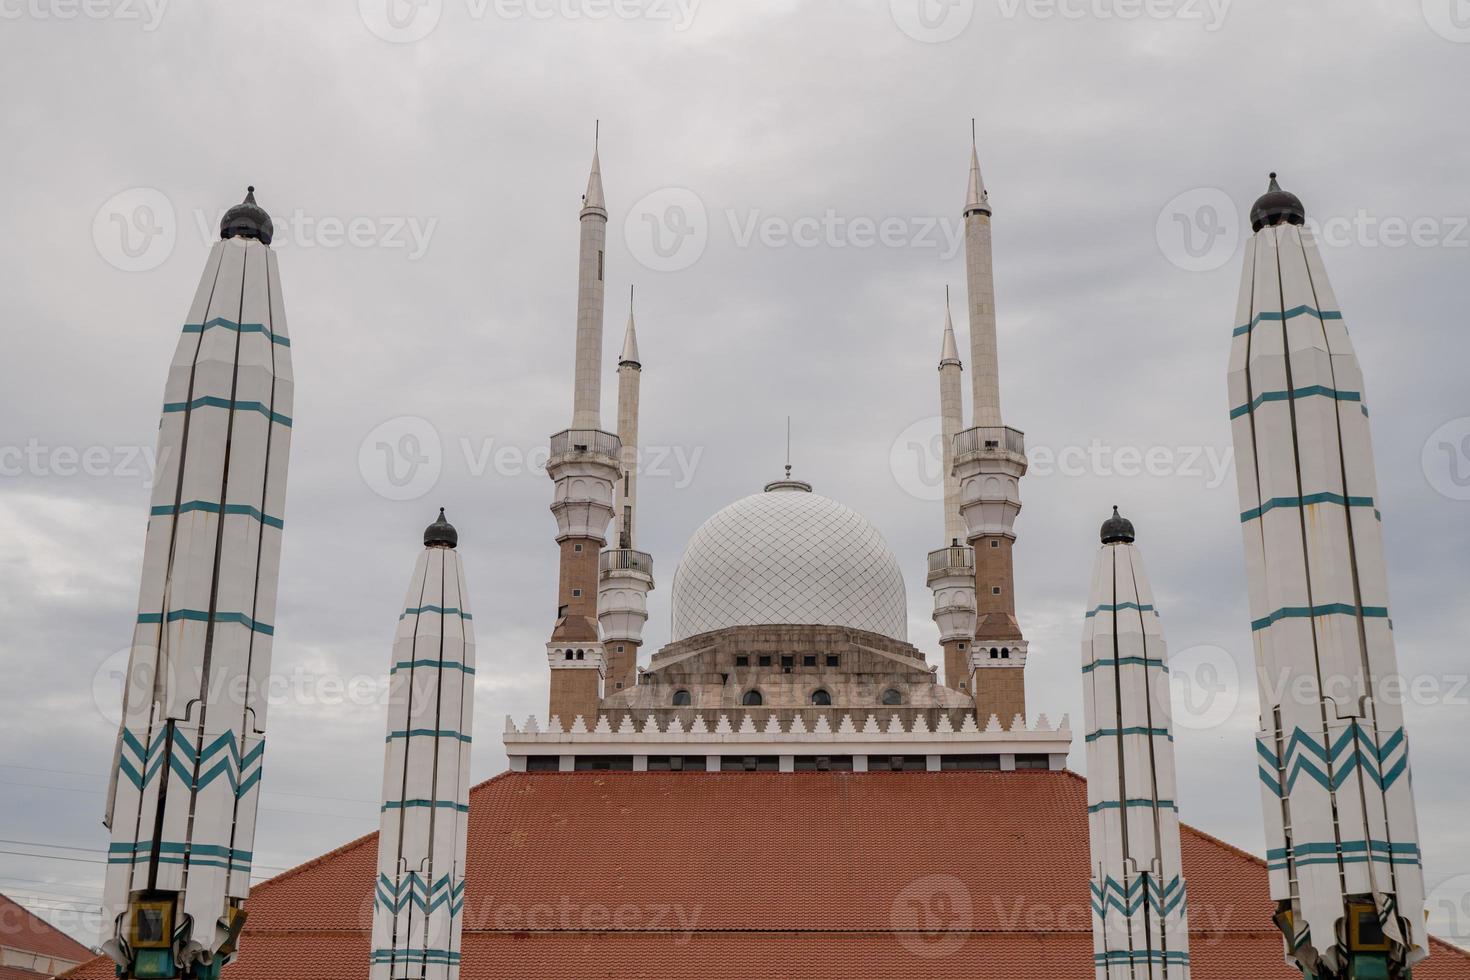 großartig Moschee auf das Semarang zentral Java, wann Tag Zeit mit wolkig Himmel. das Foto ist geeignet zu verwenden zum Ramadhan Poster und Muslim Inhalt Medien.